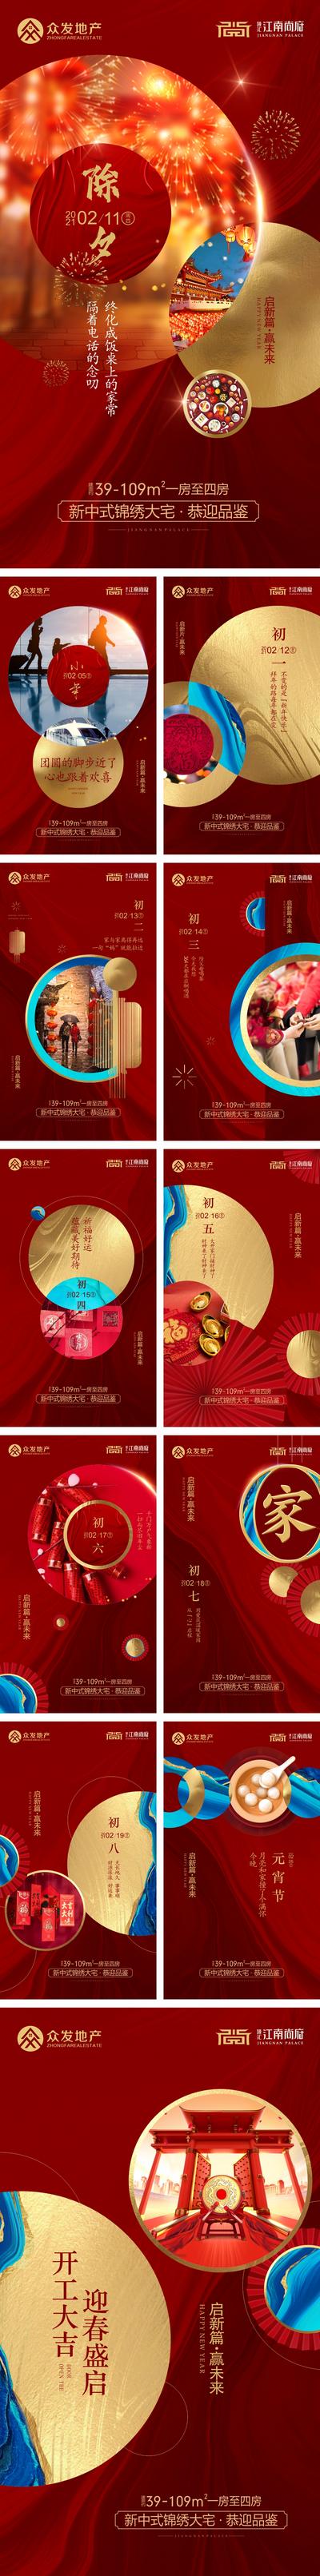 南门网 海报 房地产 春节 除夕 中国传统节日 正月 习俗 系列